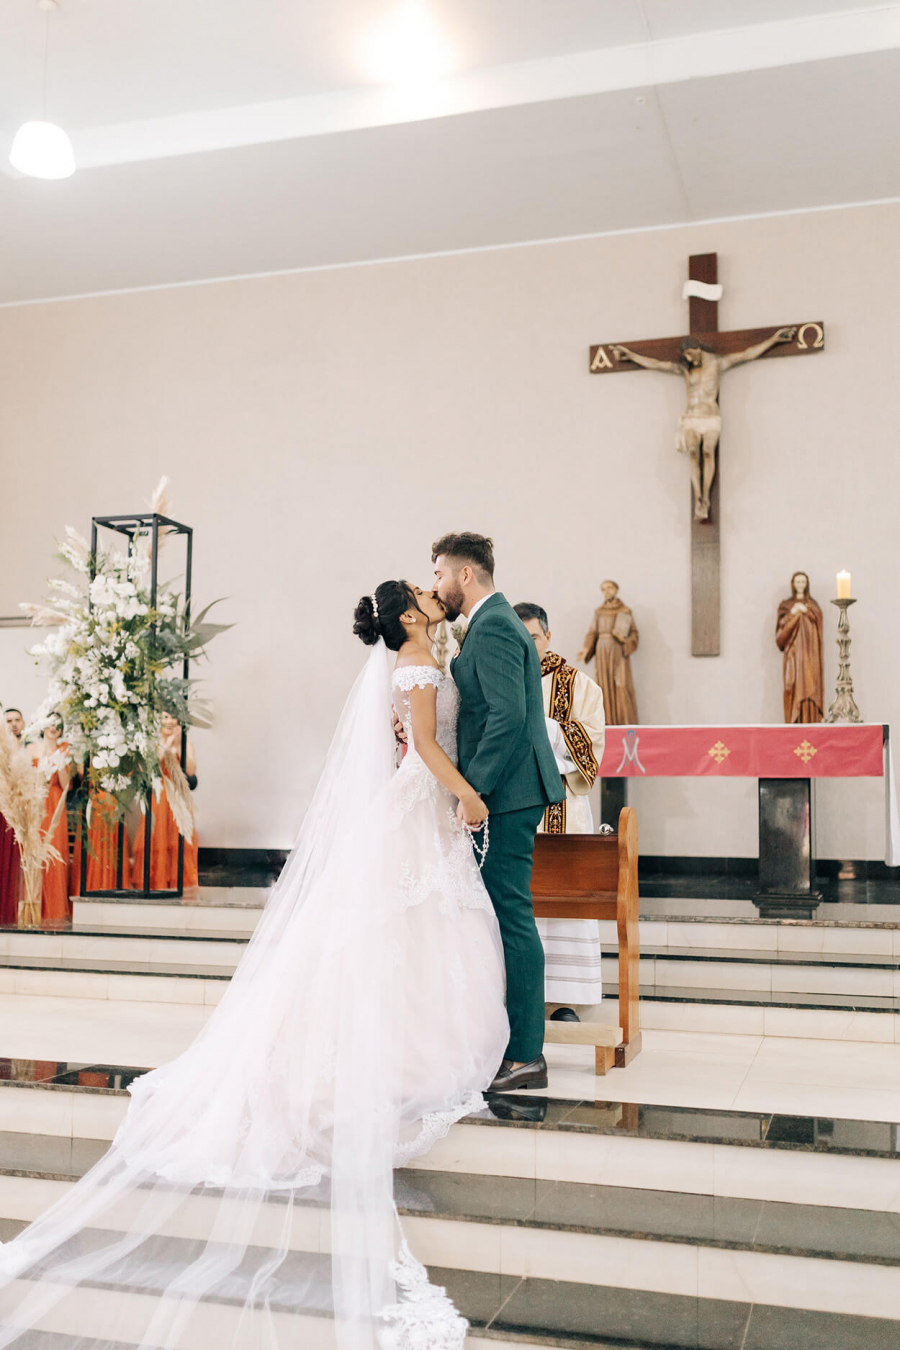  Casamento-na-Igreja (19)